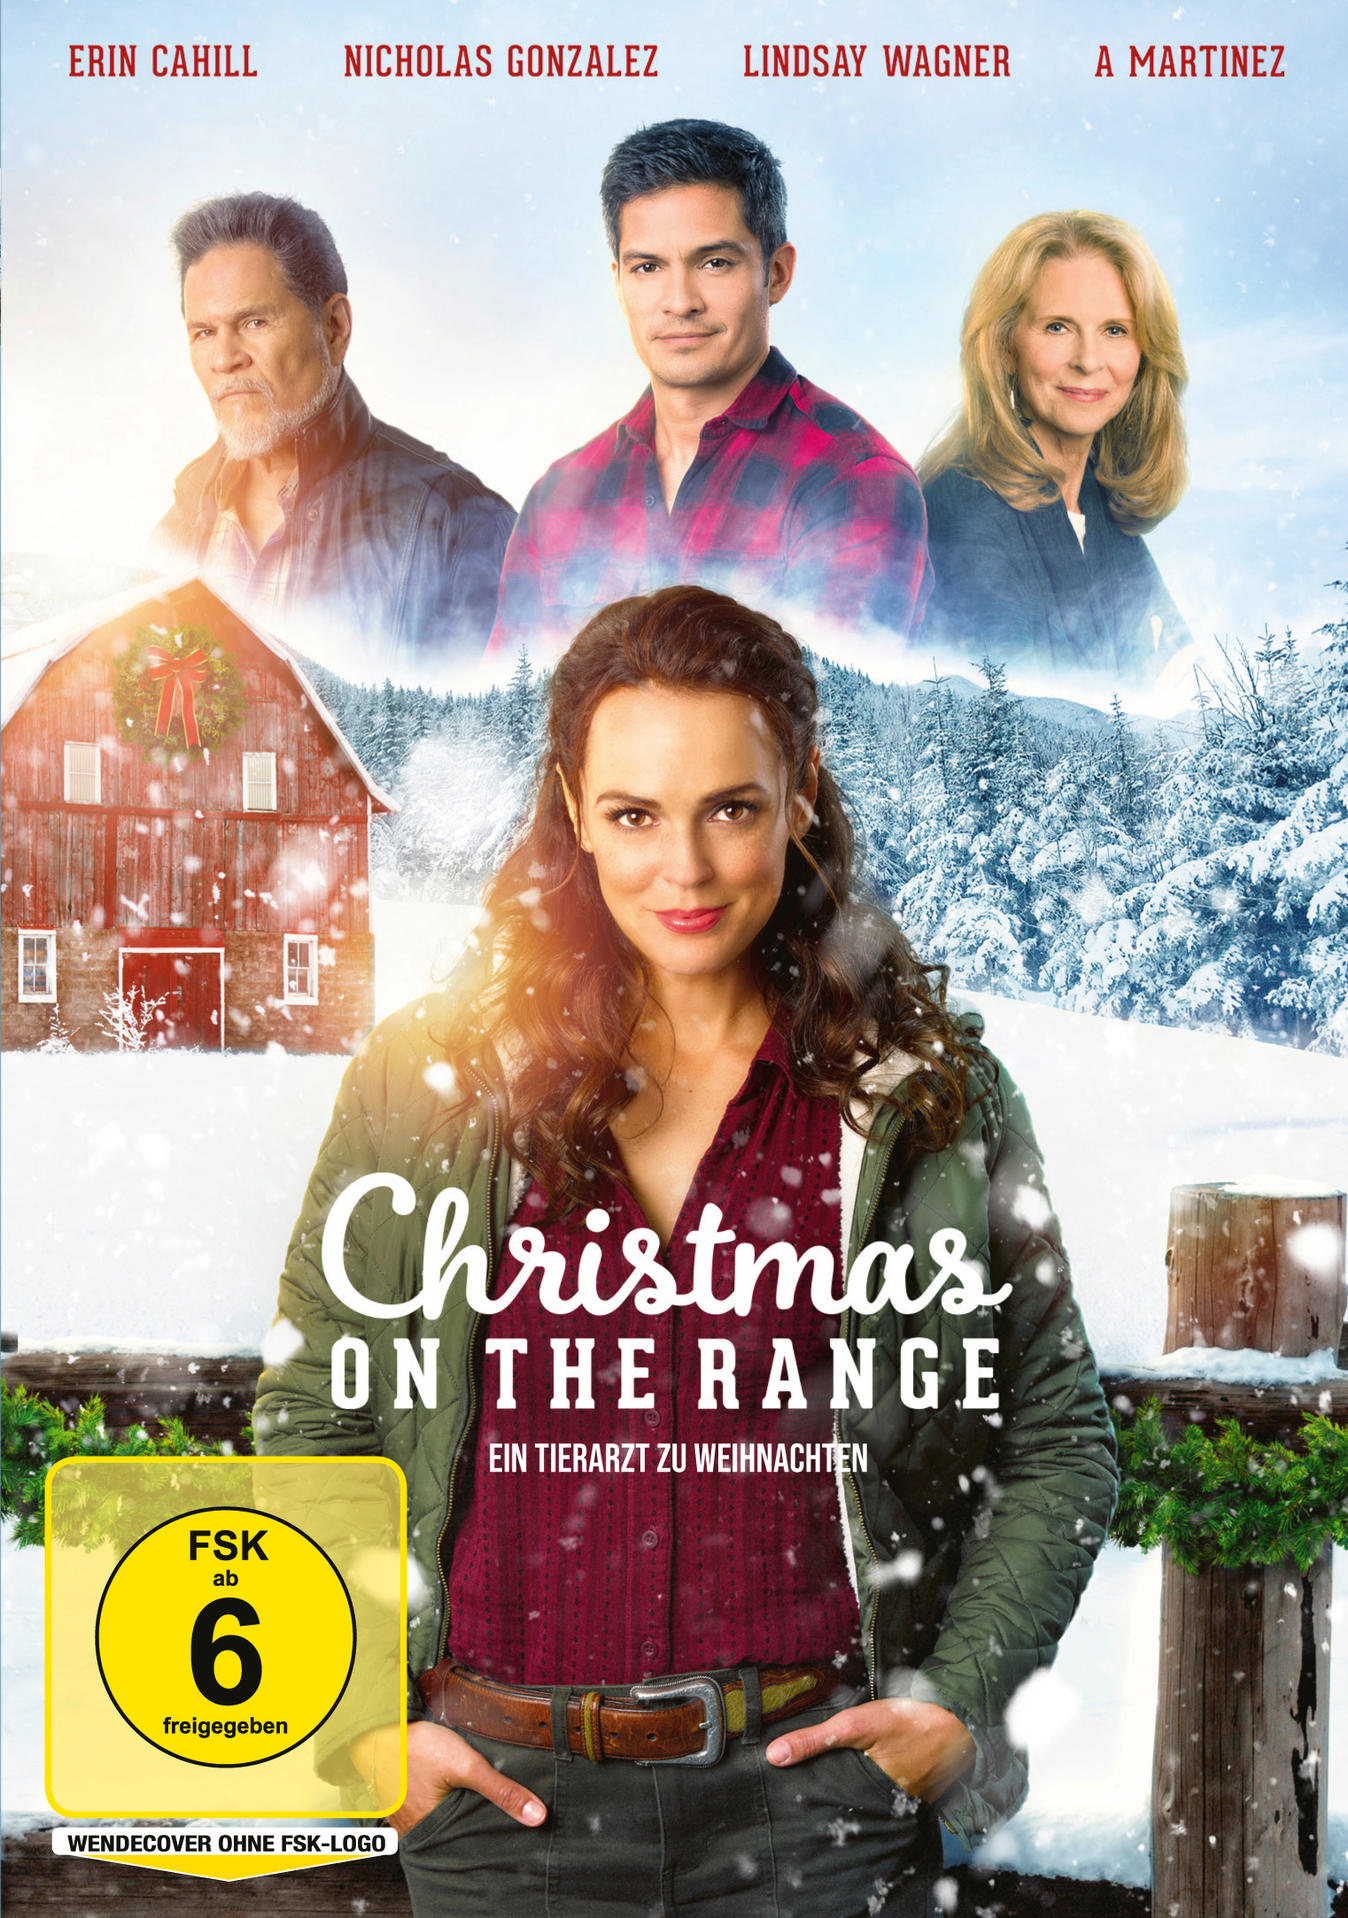 Range Ein On The Tierarzt - Christmas zu DVD Weihnachten